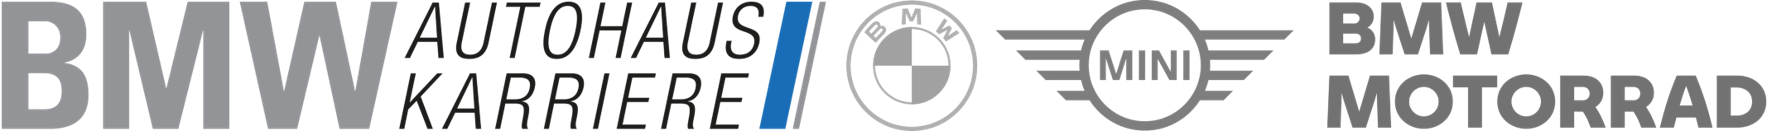 BMW Autohaus Karriere